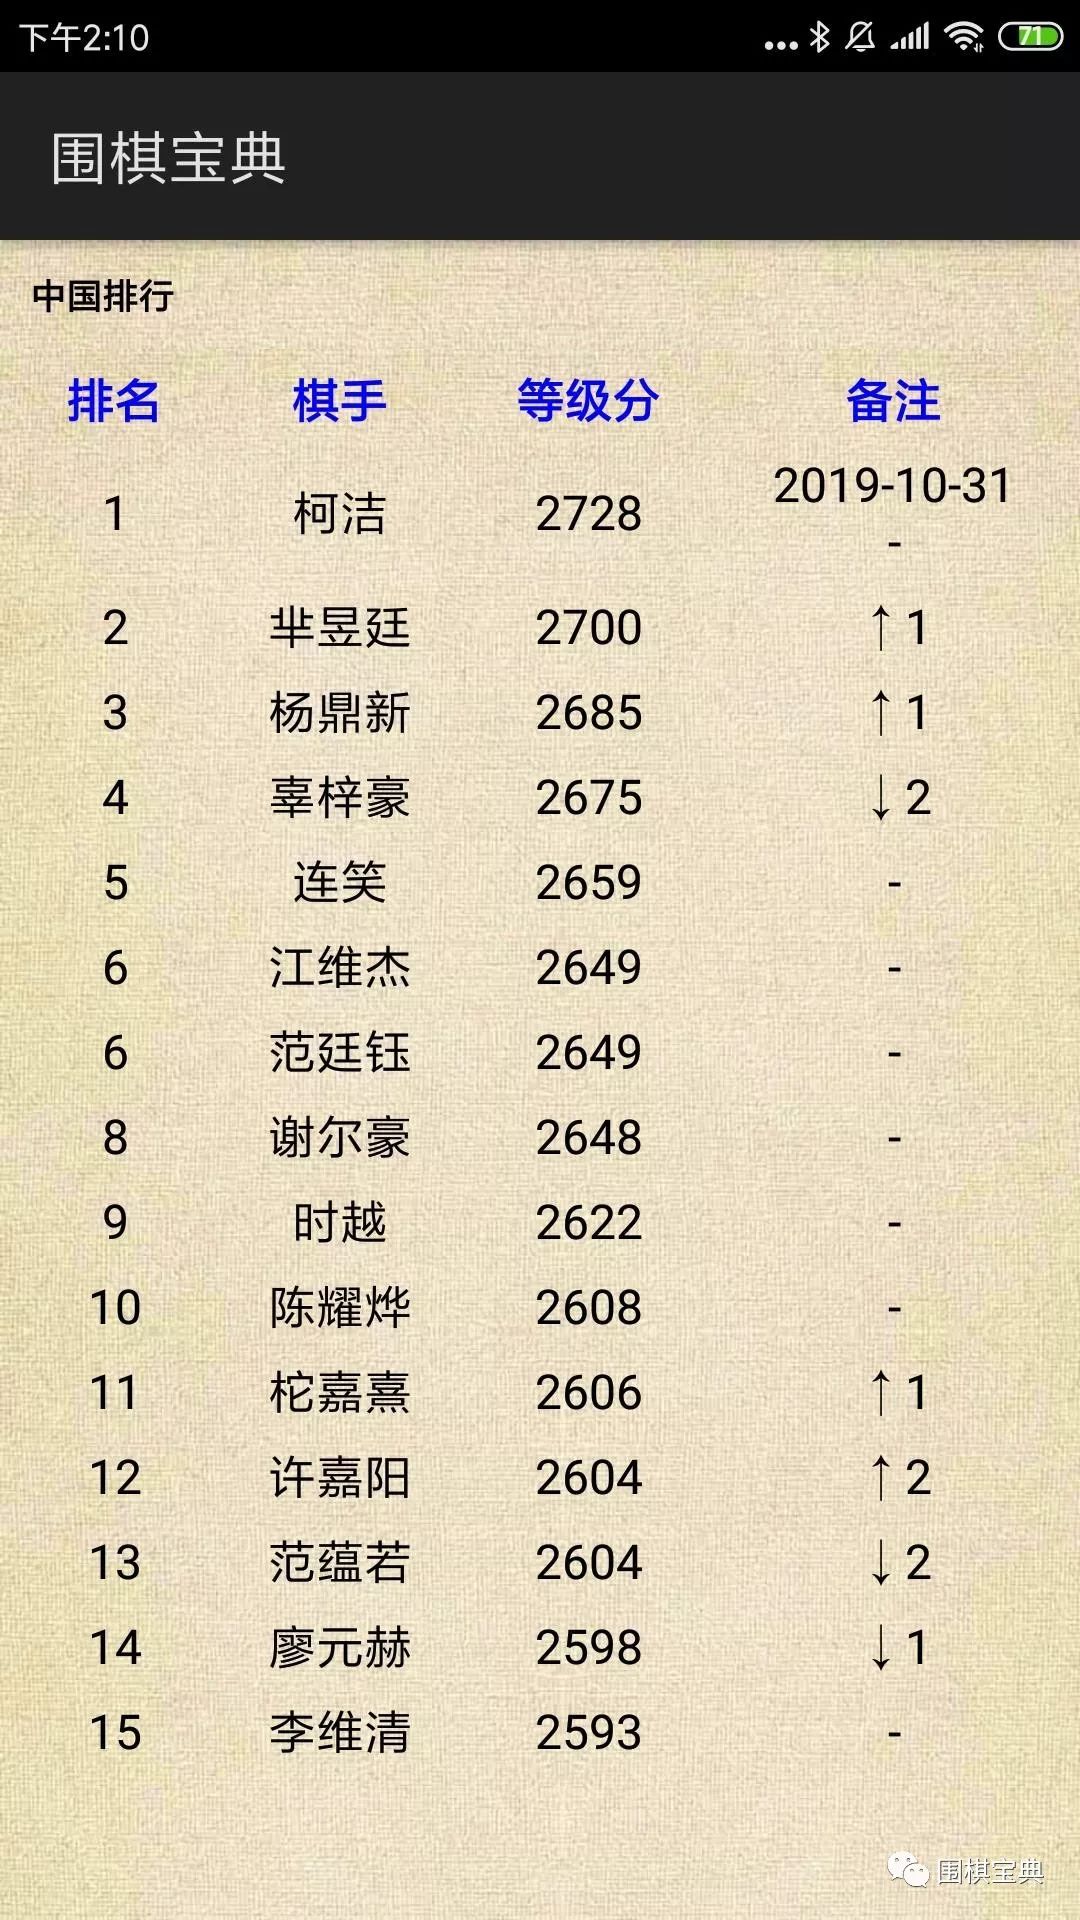 中国围棋等级分排行榜前15位(中国围棋等级分6月最新排名)